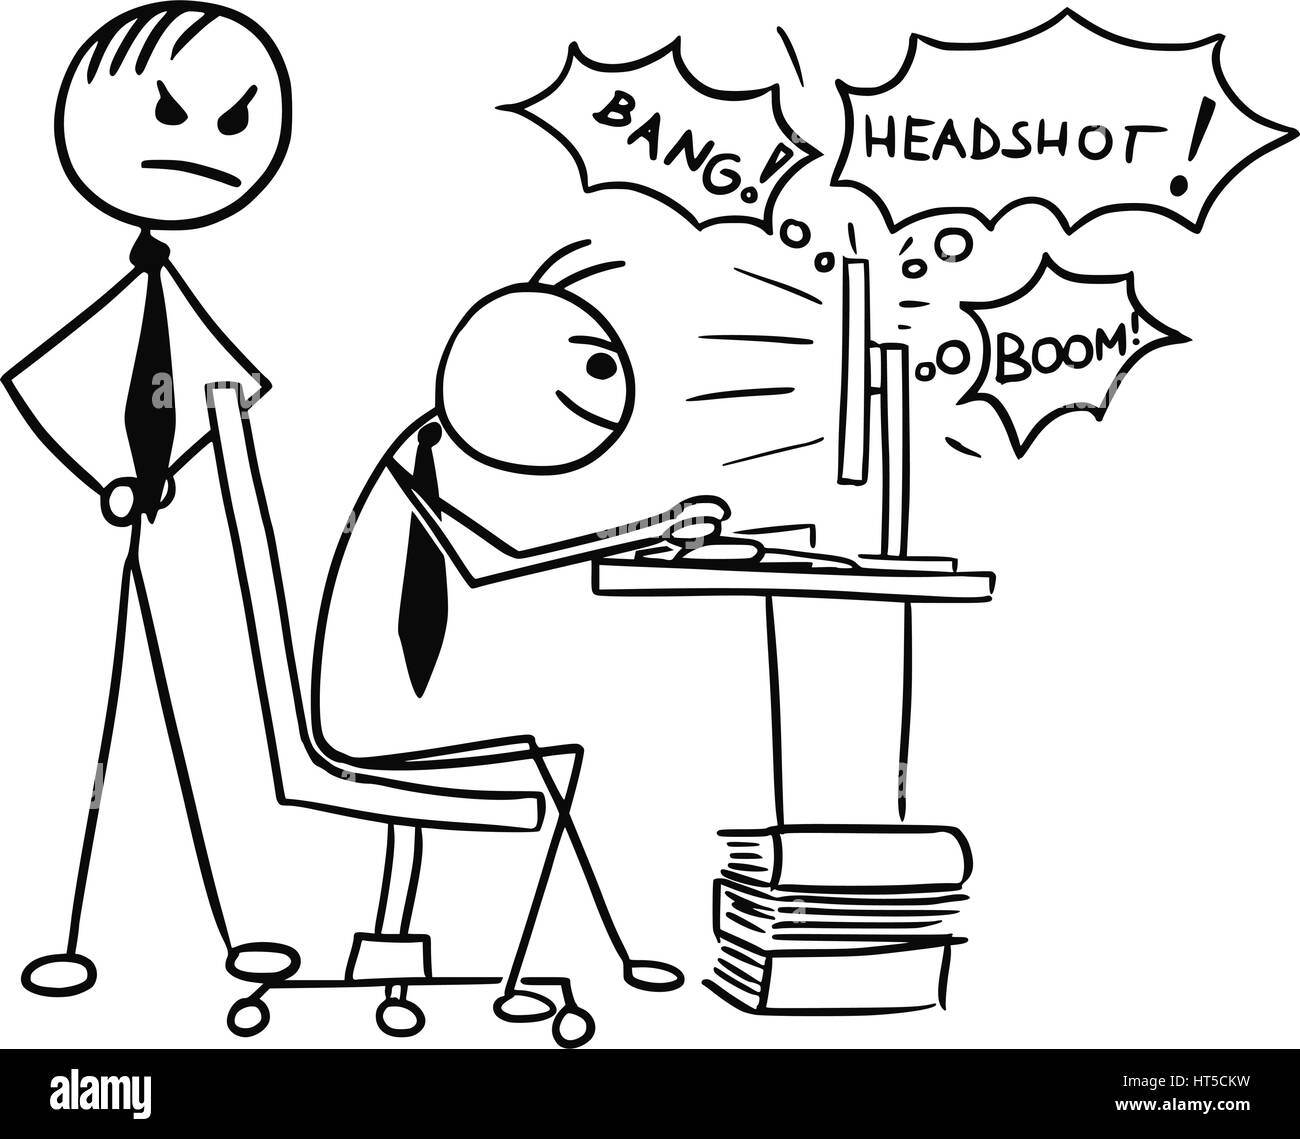 Vettore di Cartoon doodle stickman riproduzione di video gioco sullo schermo del computer durante il processo di lavoro con il boss arrabbiato dietro di lui Illustrazione Vettoriale